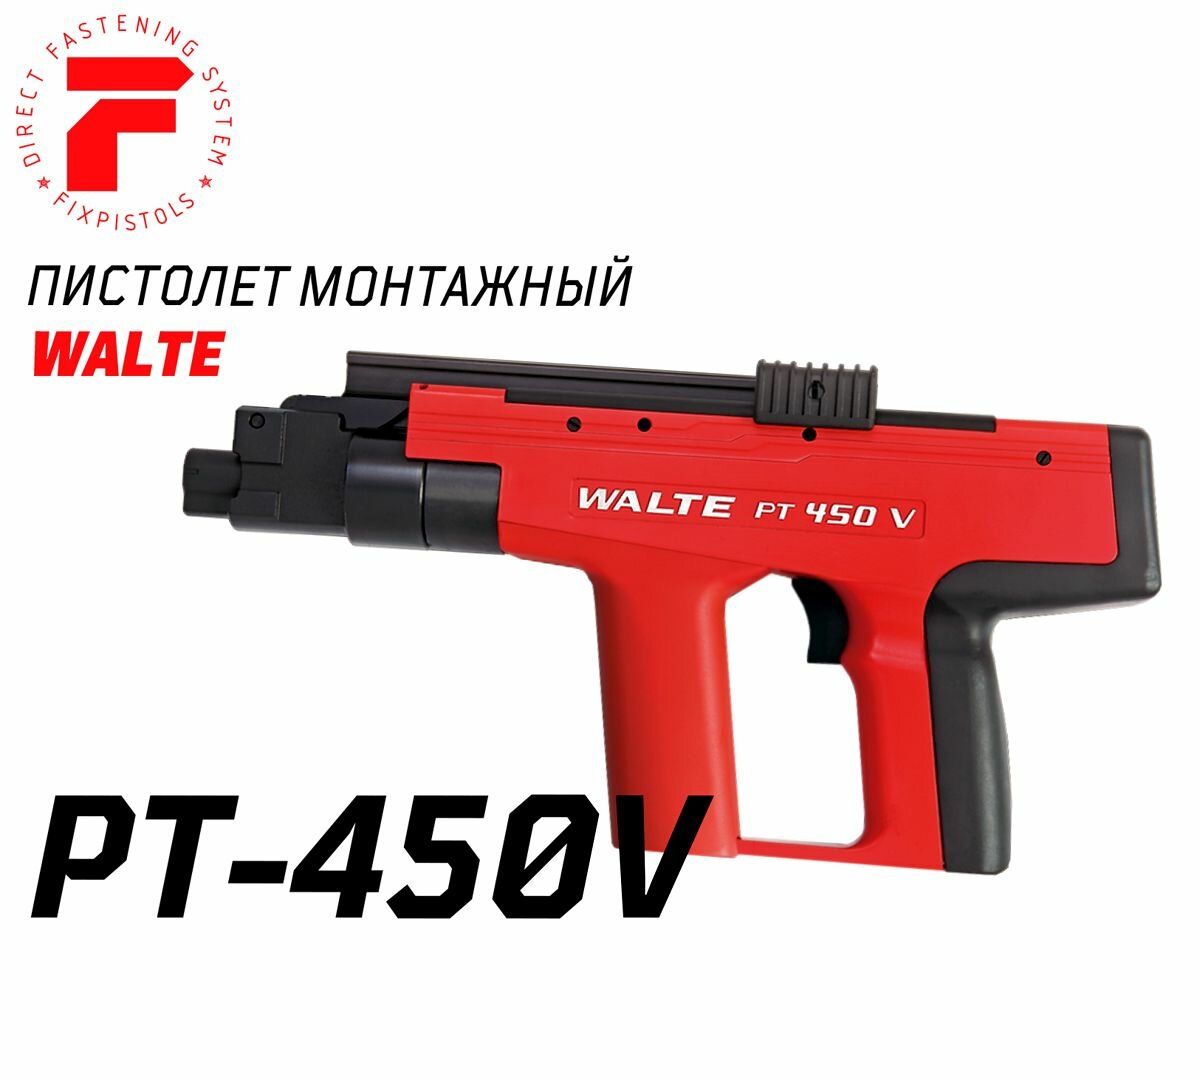 Порохой монтажный пистолет Walte PT450V